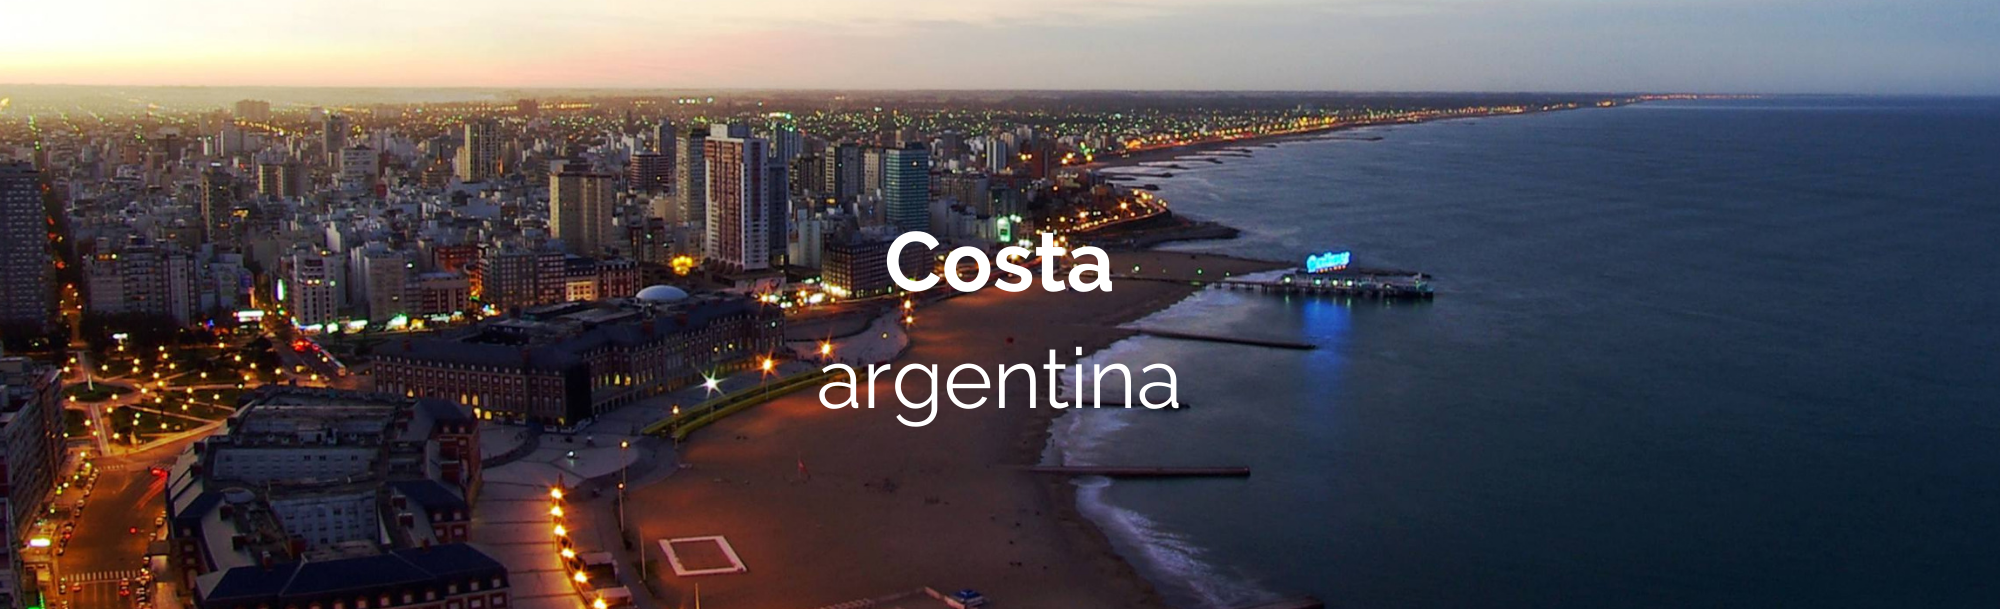 Costa argentina